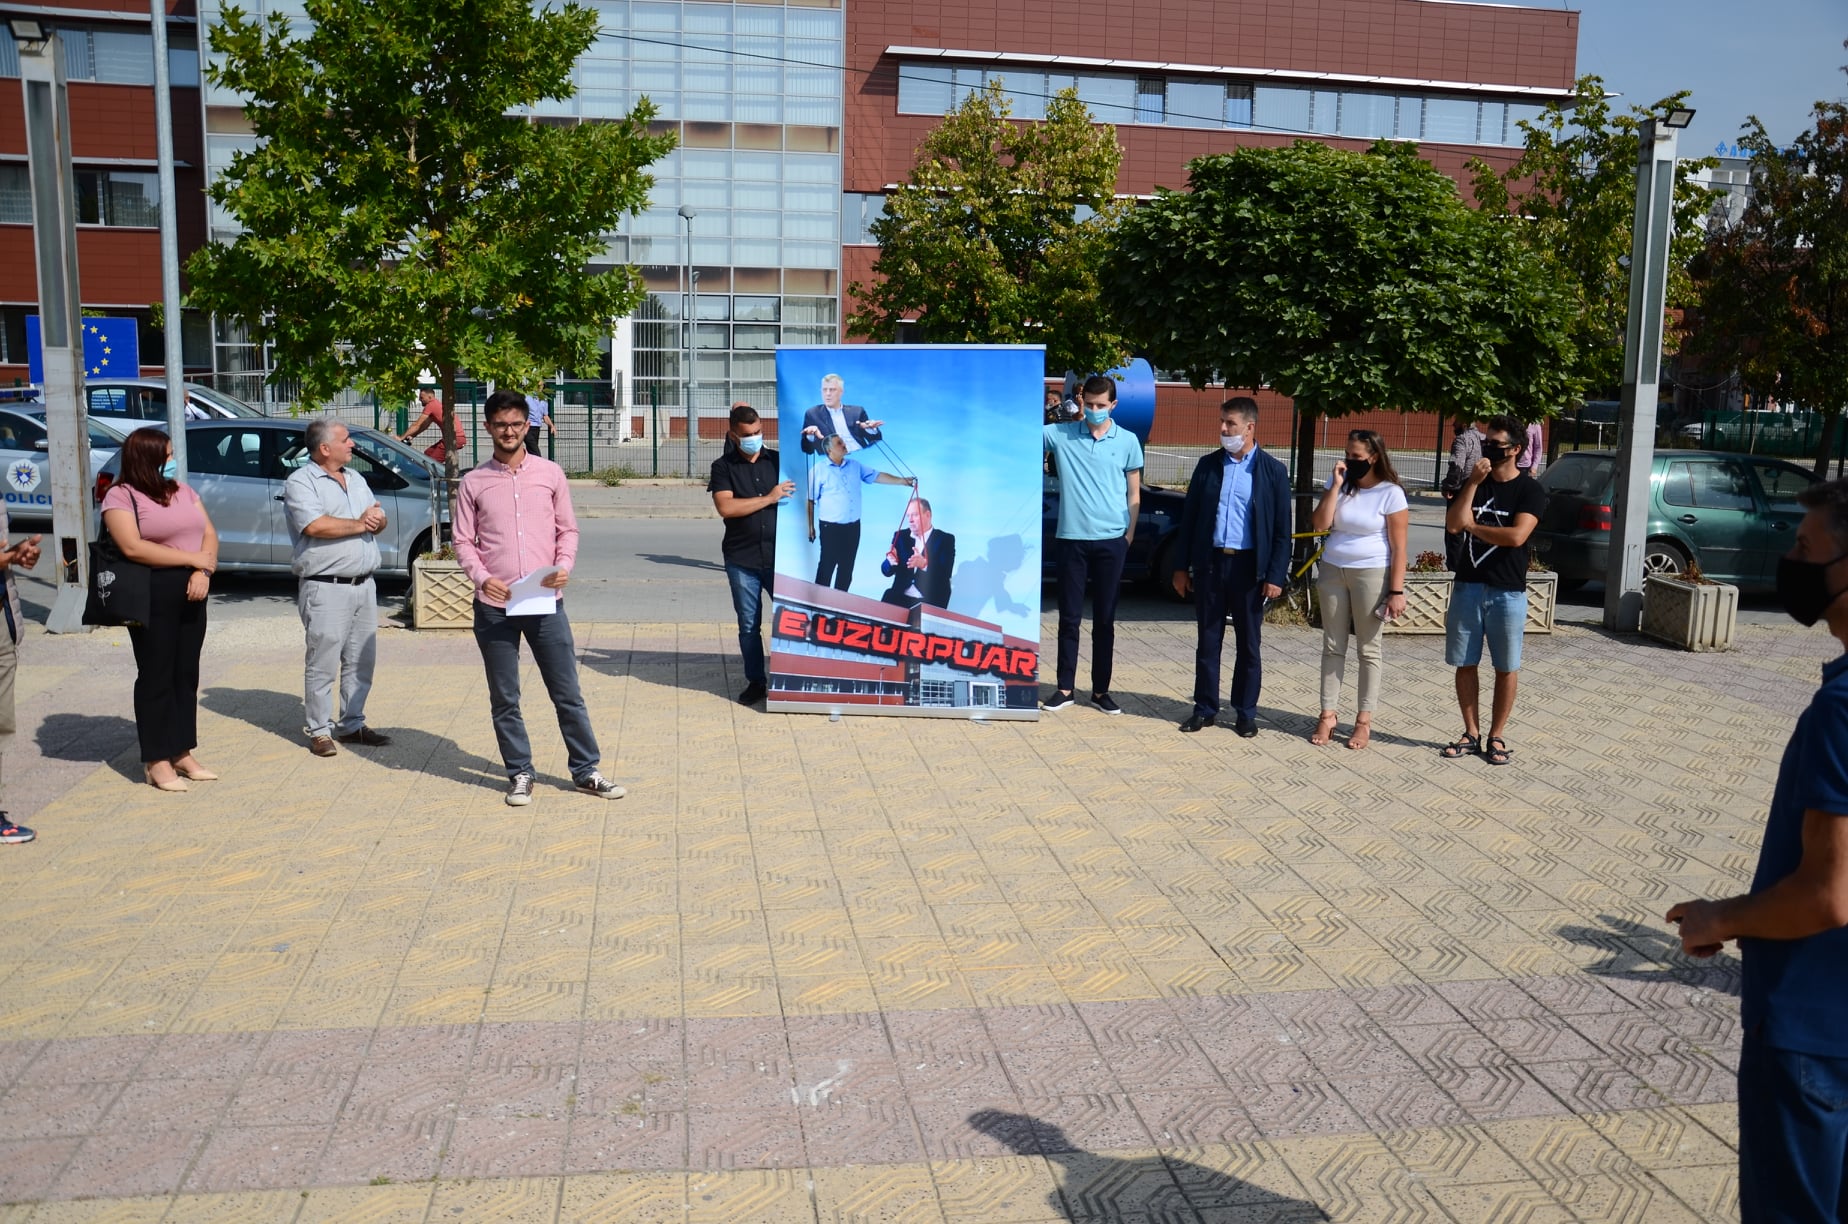  Vetëvendosje organizon një aksion simbolik para Komunës së Podujevës |PAMJE